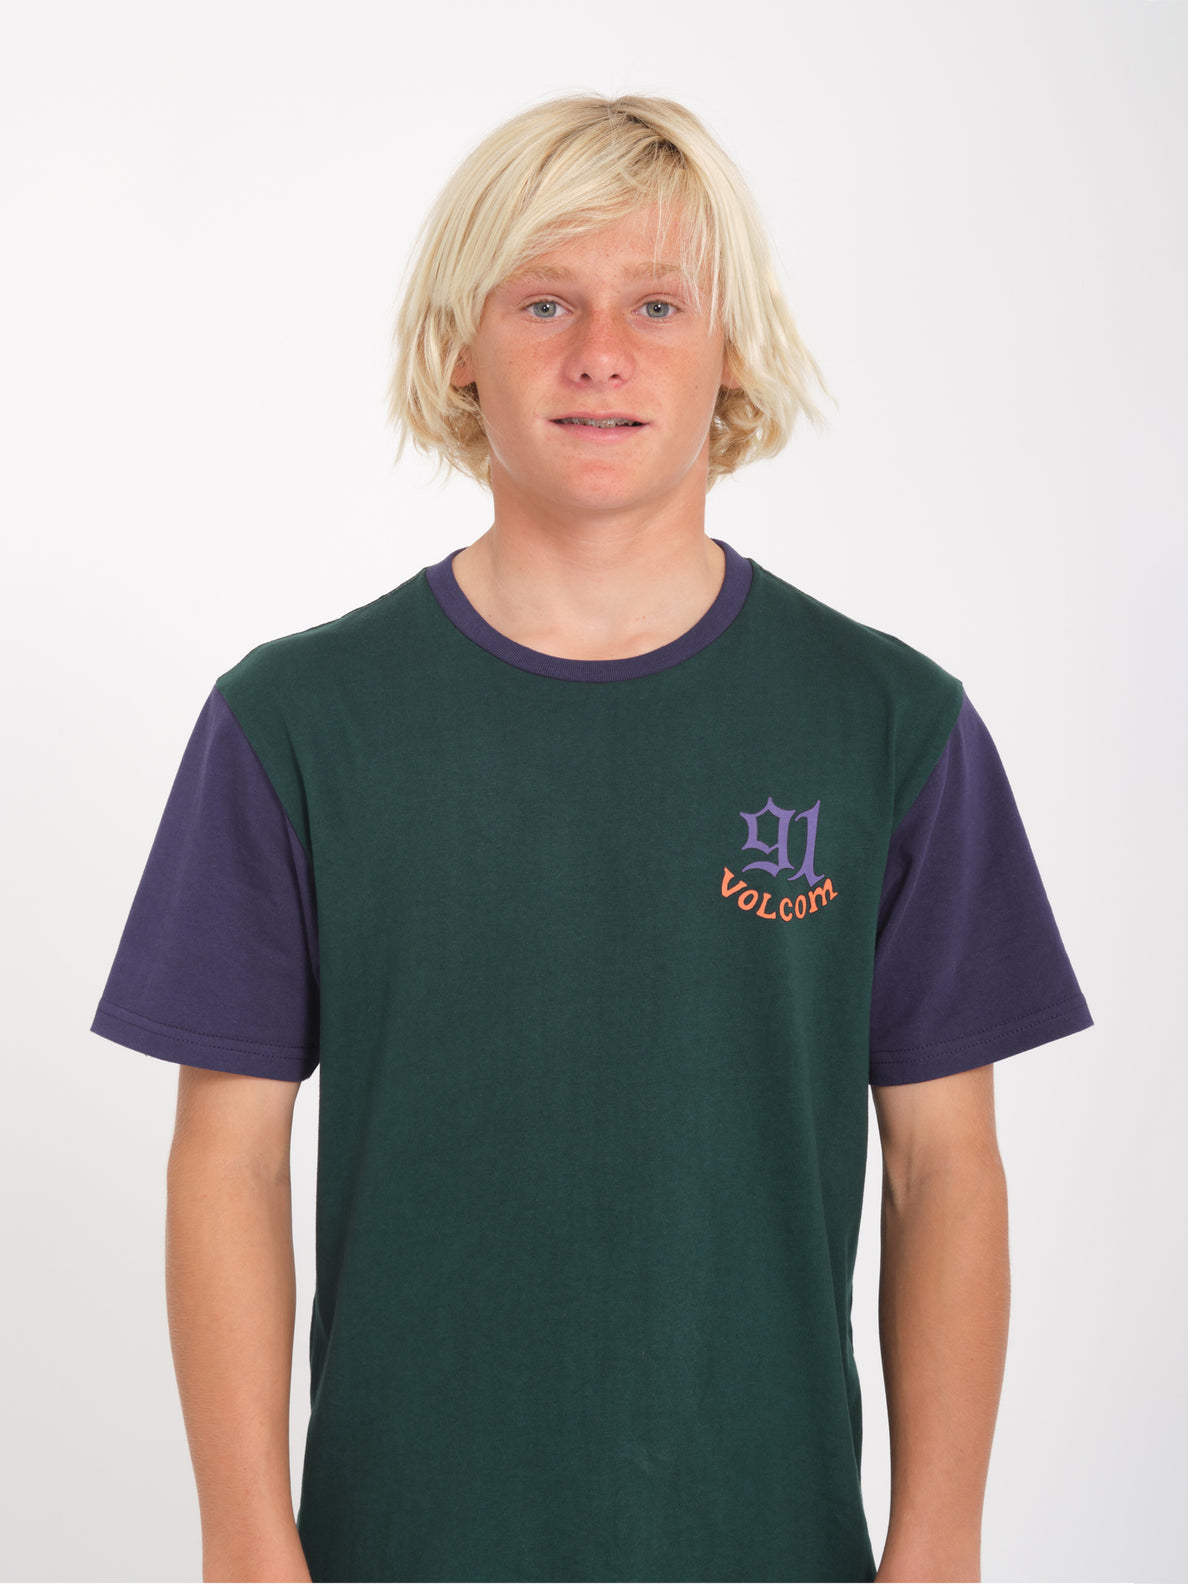 Nando Von Arb 2 T-shirt - PONDEROSA PINE - (KIDS)